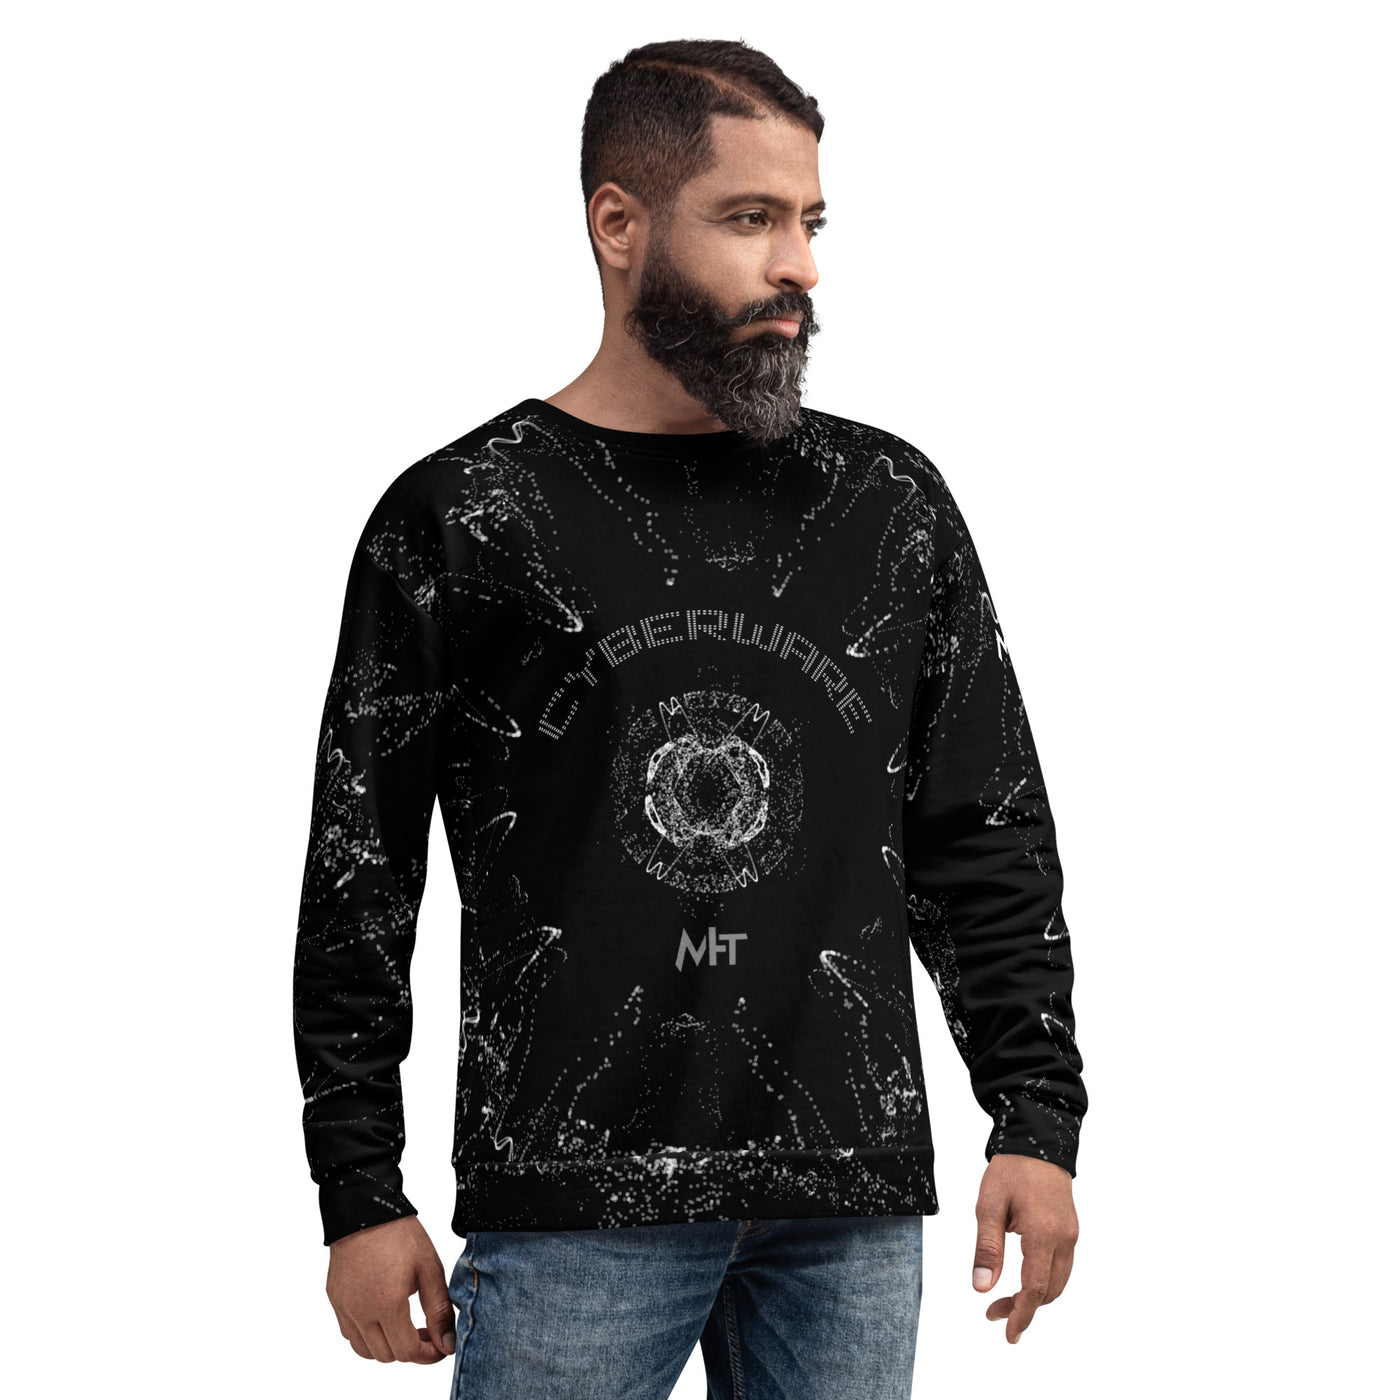 Cyberware v2 - Unisex Sweatshirt